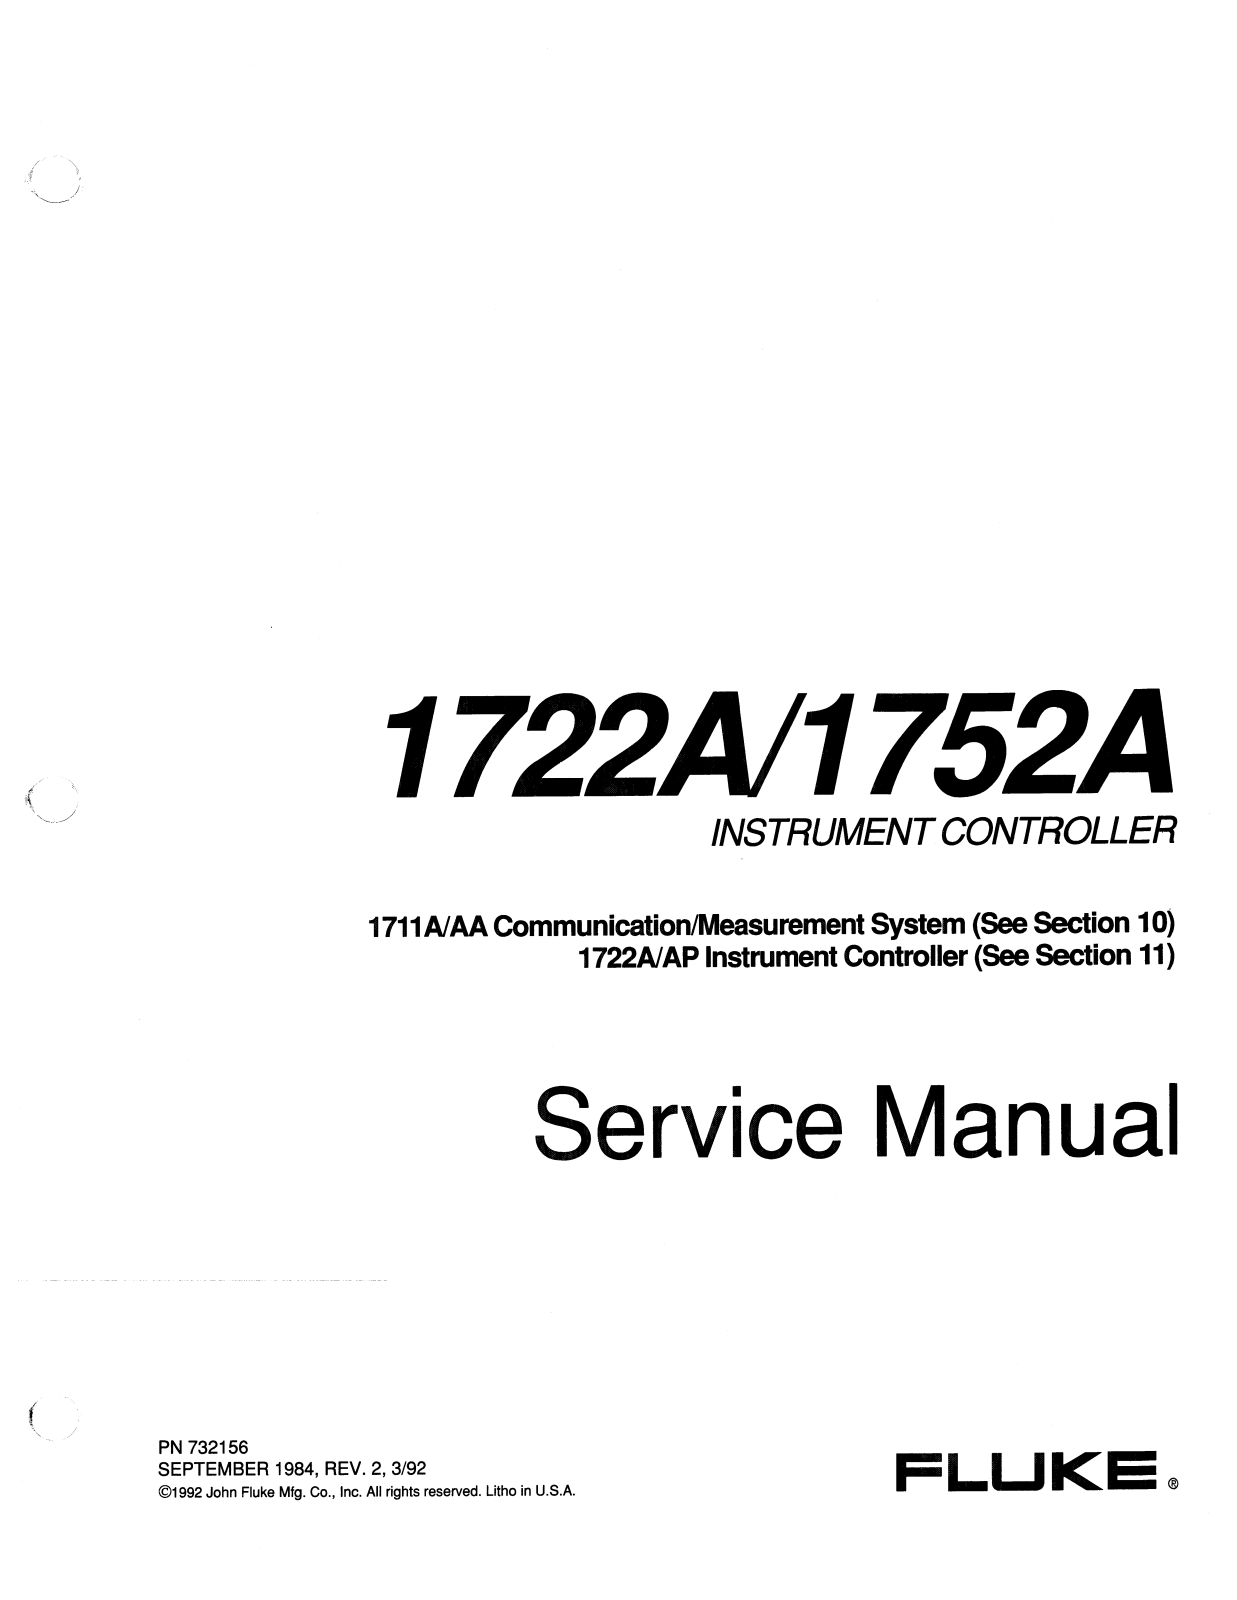 Fluke 1722AP, 1711AA, 1711A, 1752A, 1722A Service Manual